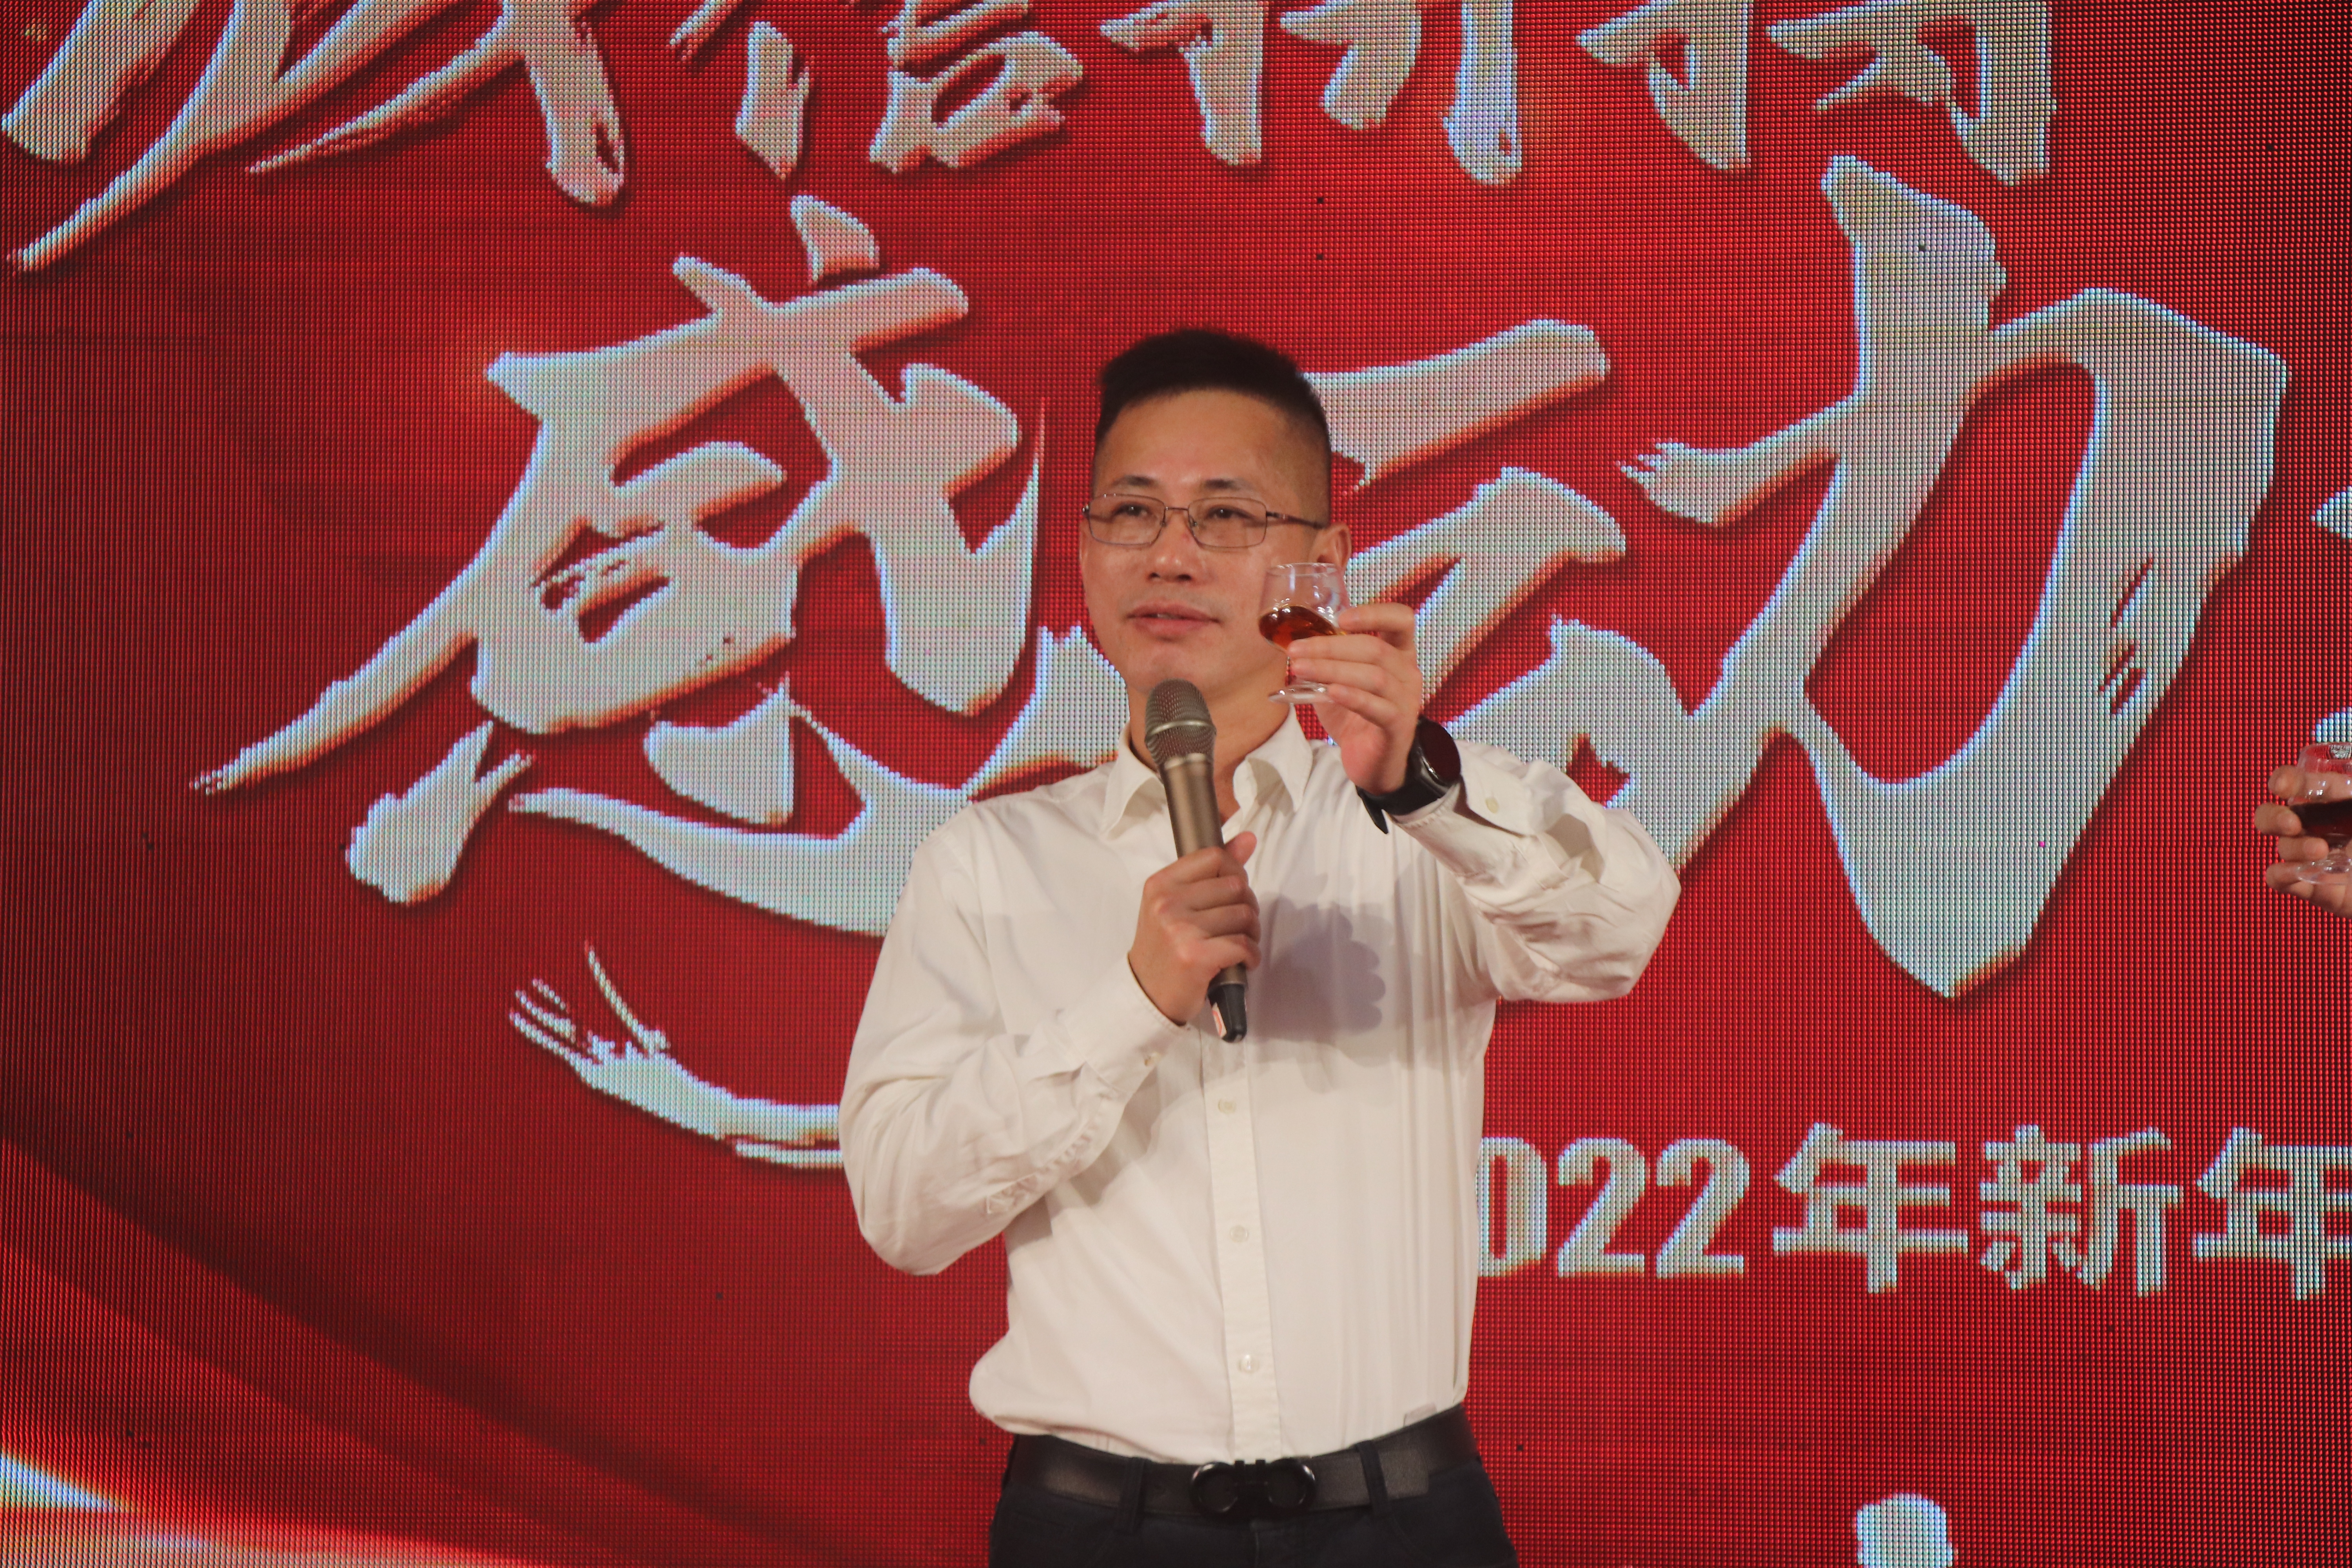 XINLE FOODS отпразднует корпоративную вечеринку по случаю китайского Нового 2022 года